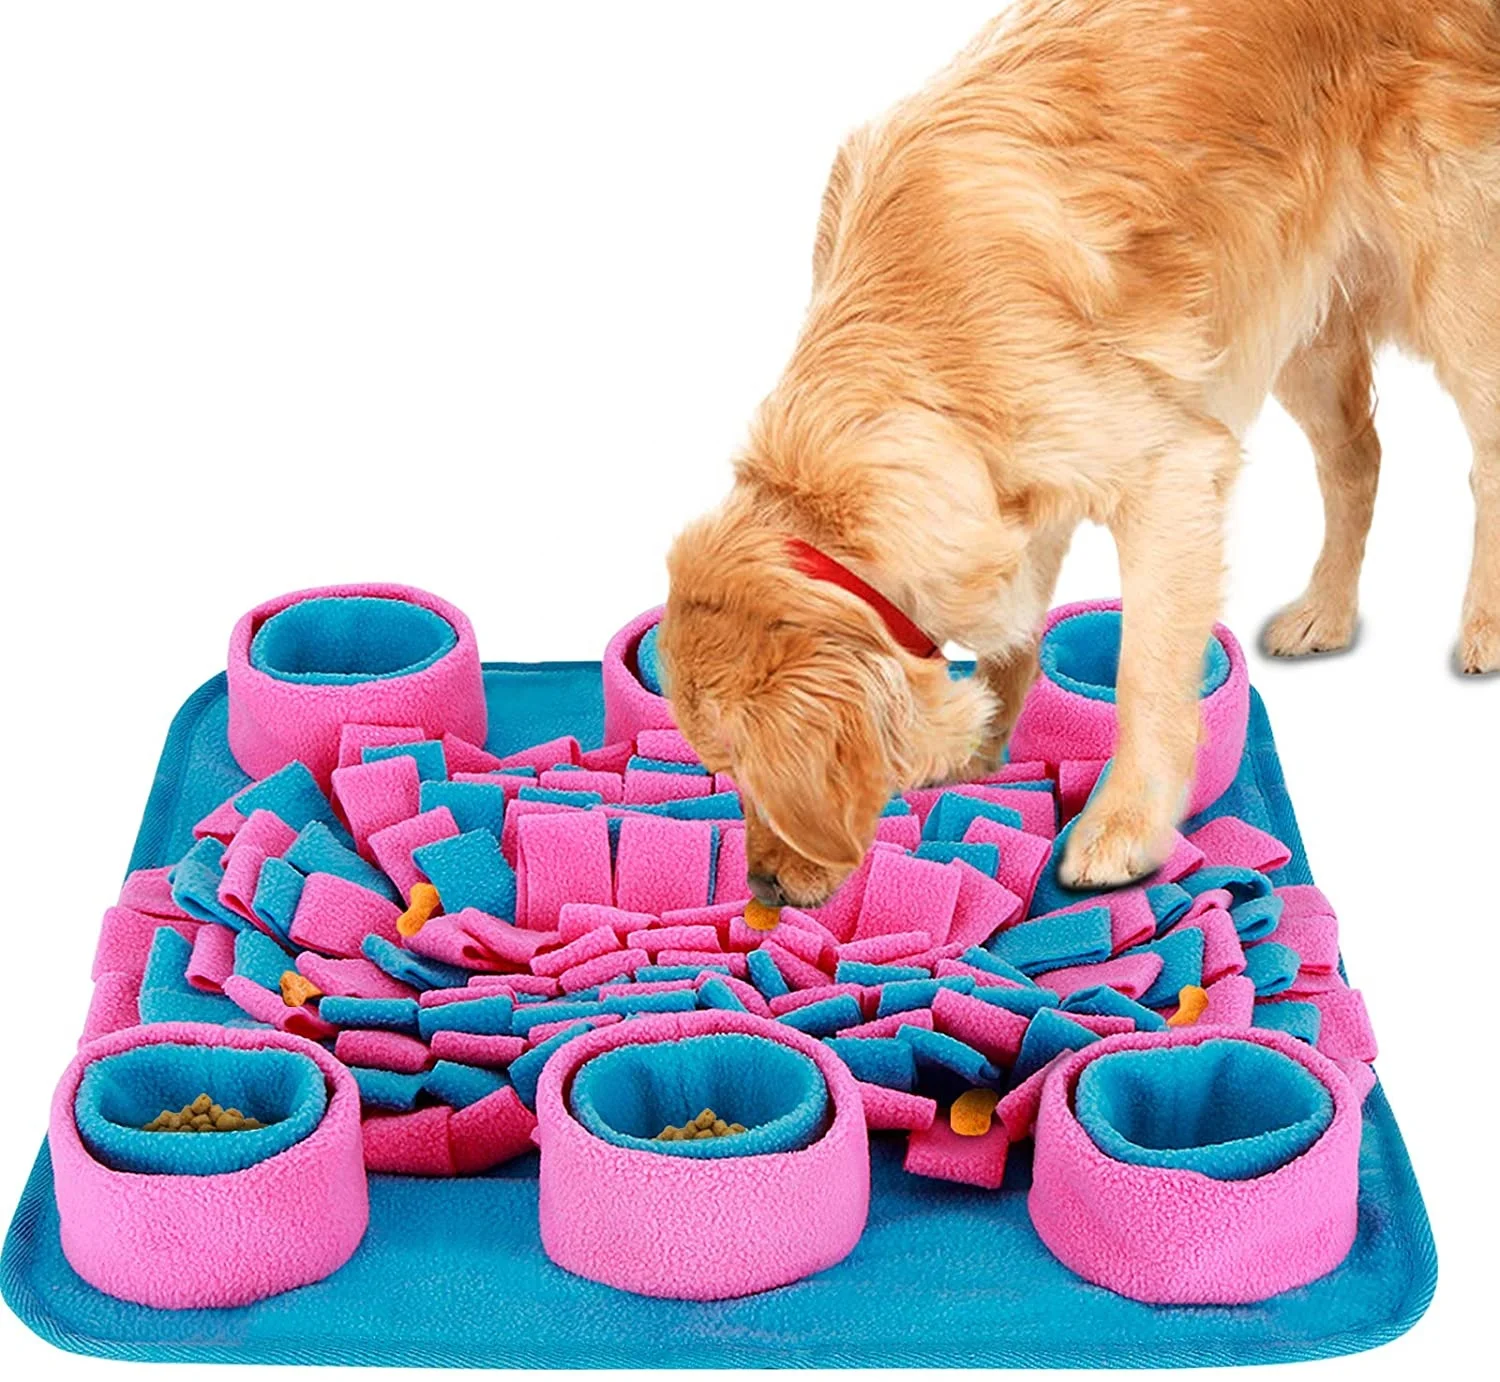 Игрушка для собак. Развивающая игрушка для собак. Интерактивная игрушка собака. Интеллектуальные игрушки для собак. Головоломка для собак